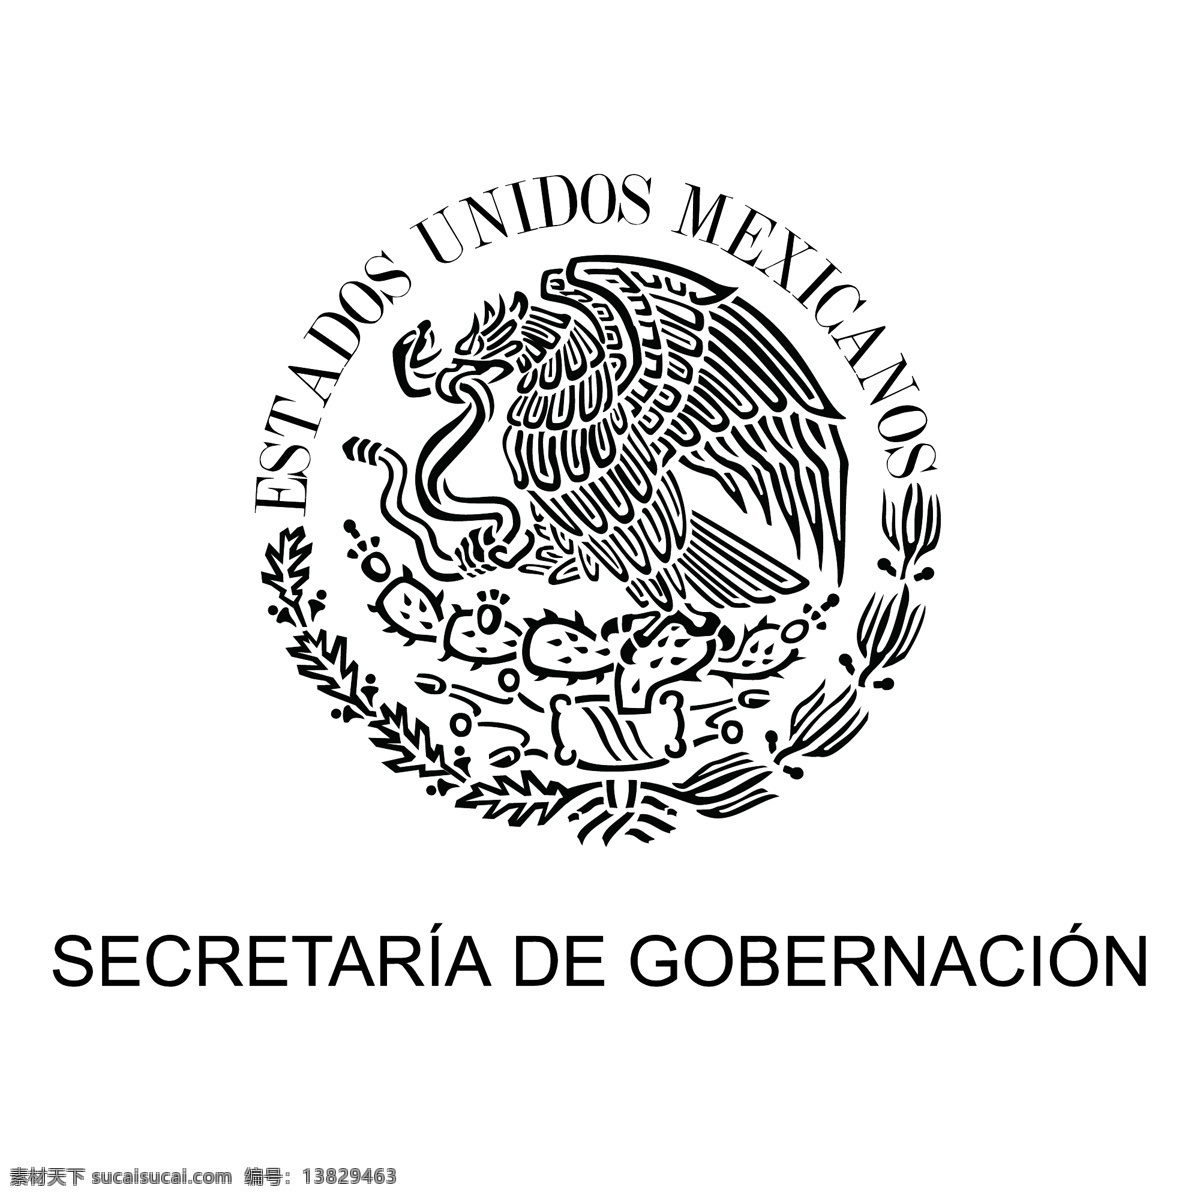 埃斯库多 nacional 墨西哥人 标识 公司 免费 品牌 品牌标识 商标 矢量标志下载 免费矢量标识 矢量 psd源文件 logo设计